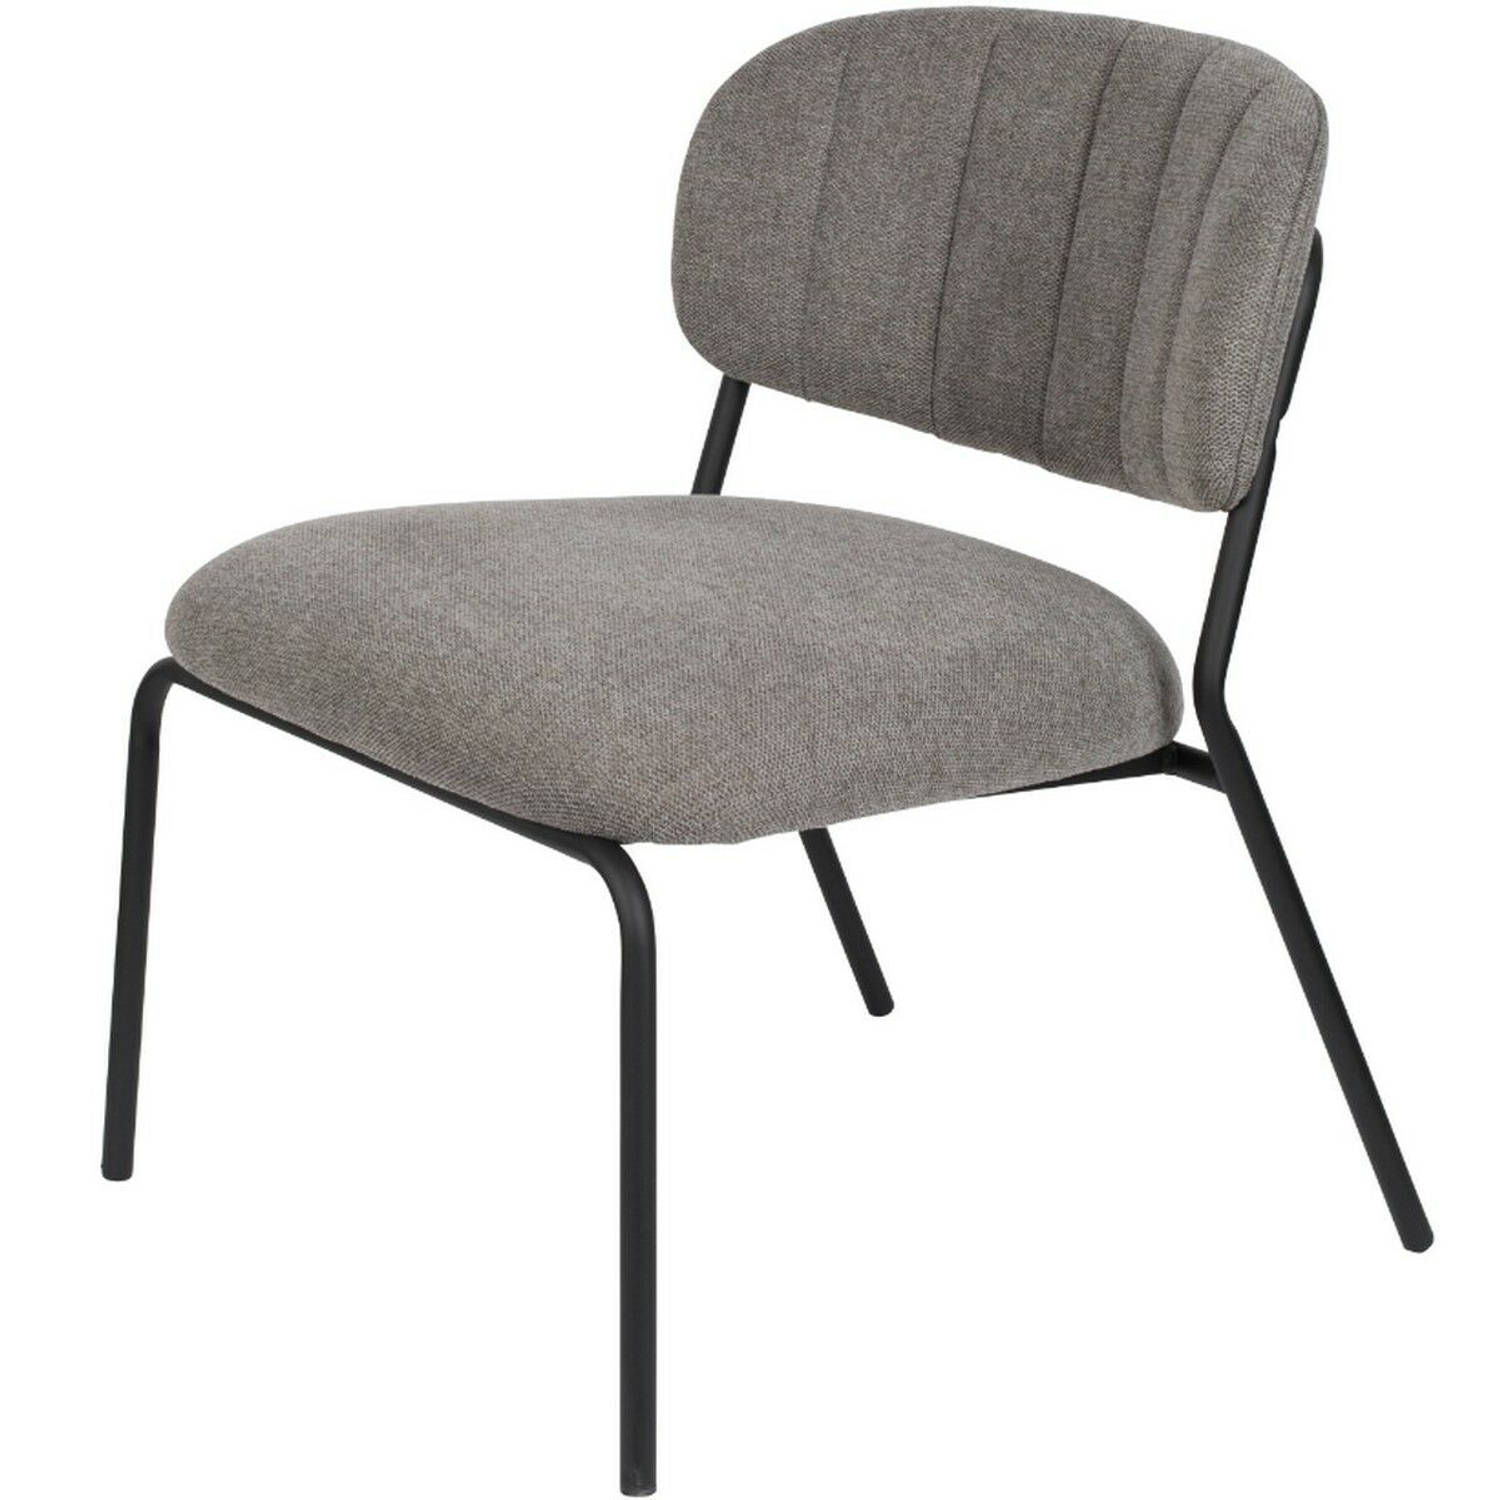 Viken fauteuil grijs/zwart (Set van 2)